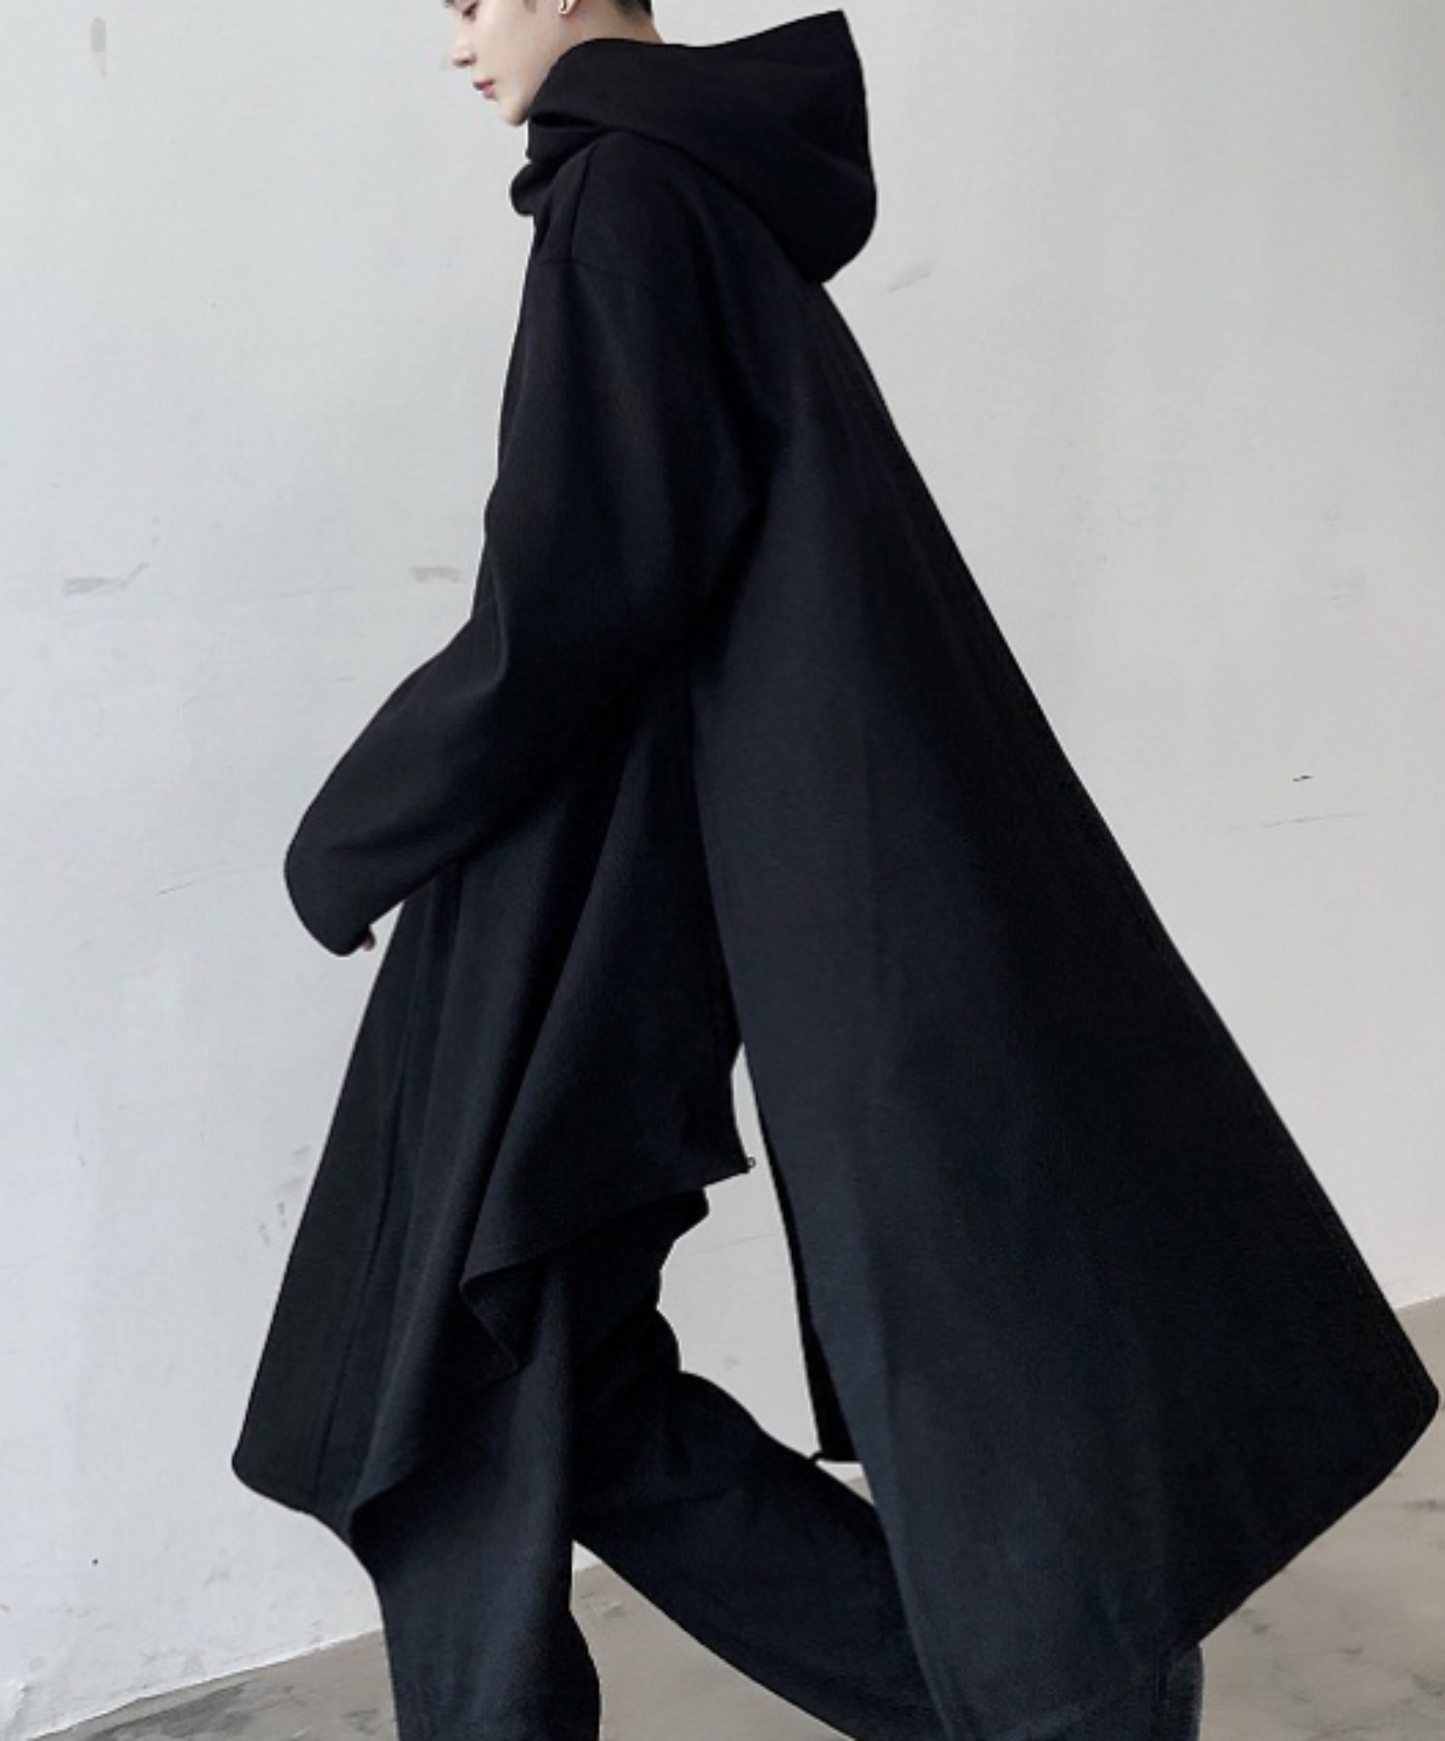 dark long hooded coat EN662